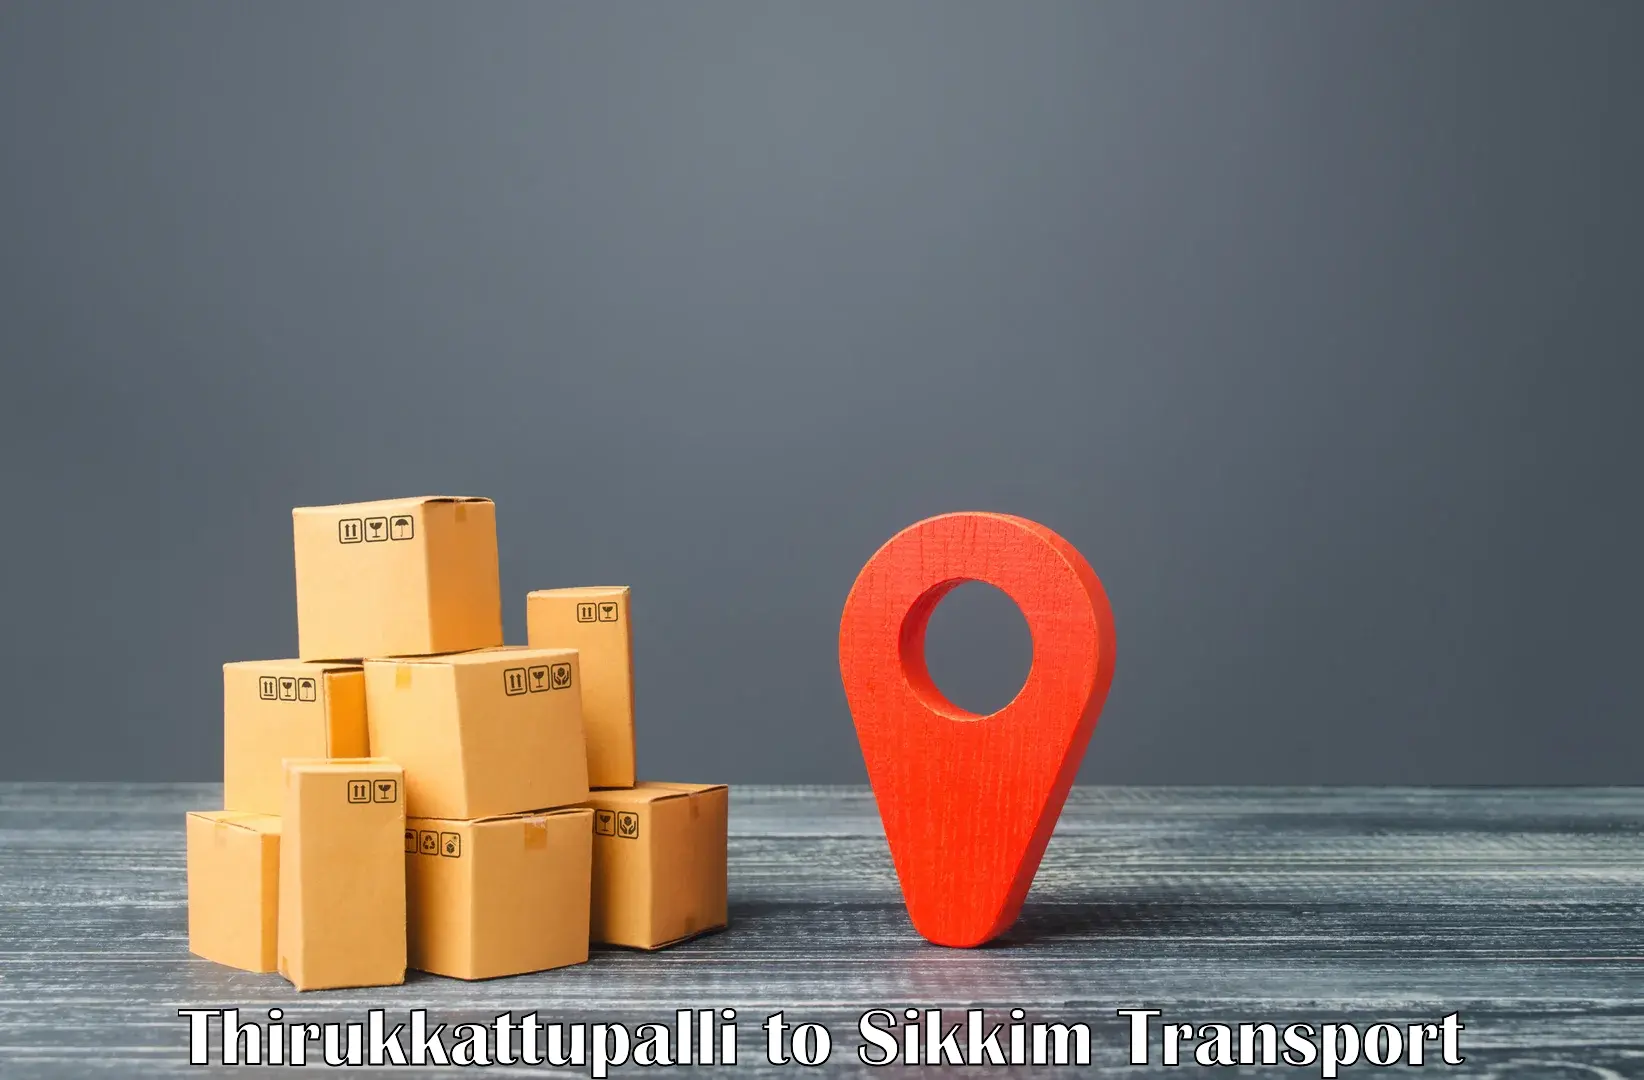 Container transport service in Thirukkattupalli to West Sikkim